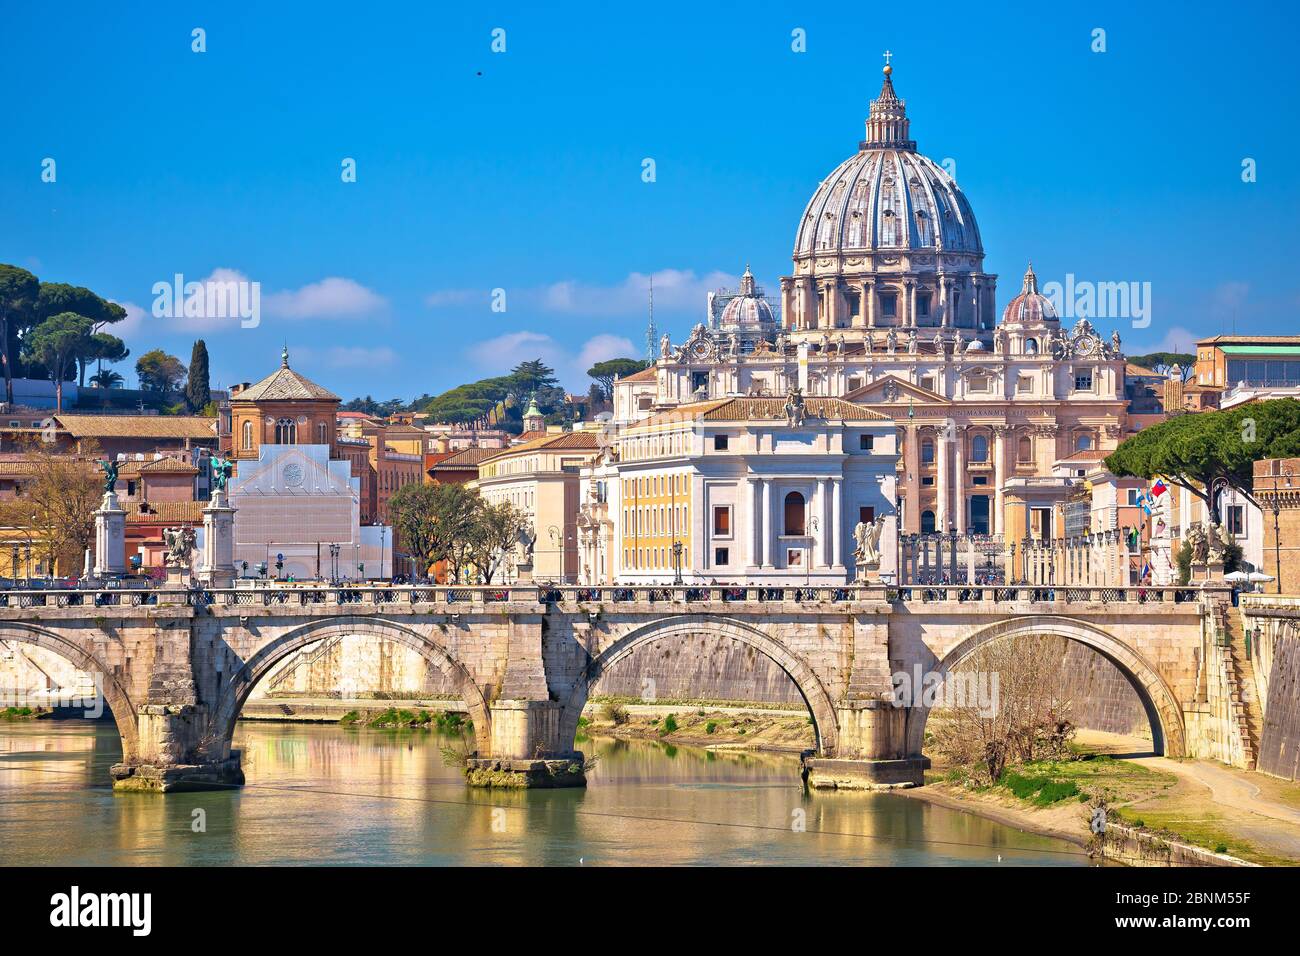 Roma y Vaticano. Tiber puente del río de San Angelo y la Basílica de San Pedro en Roma vista, ciudad eterna en Italia Foto de stock